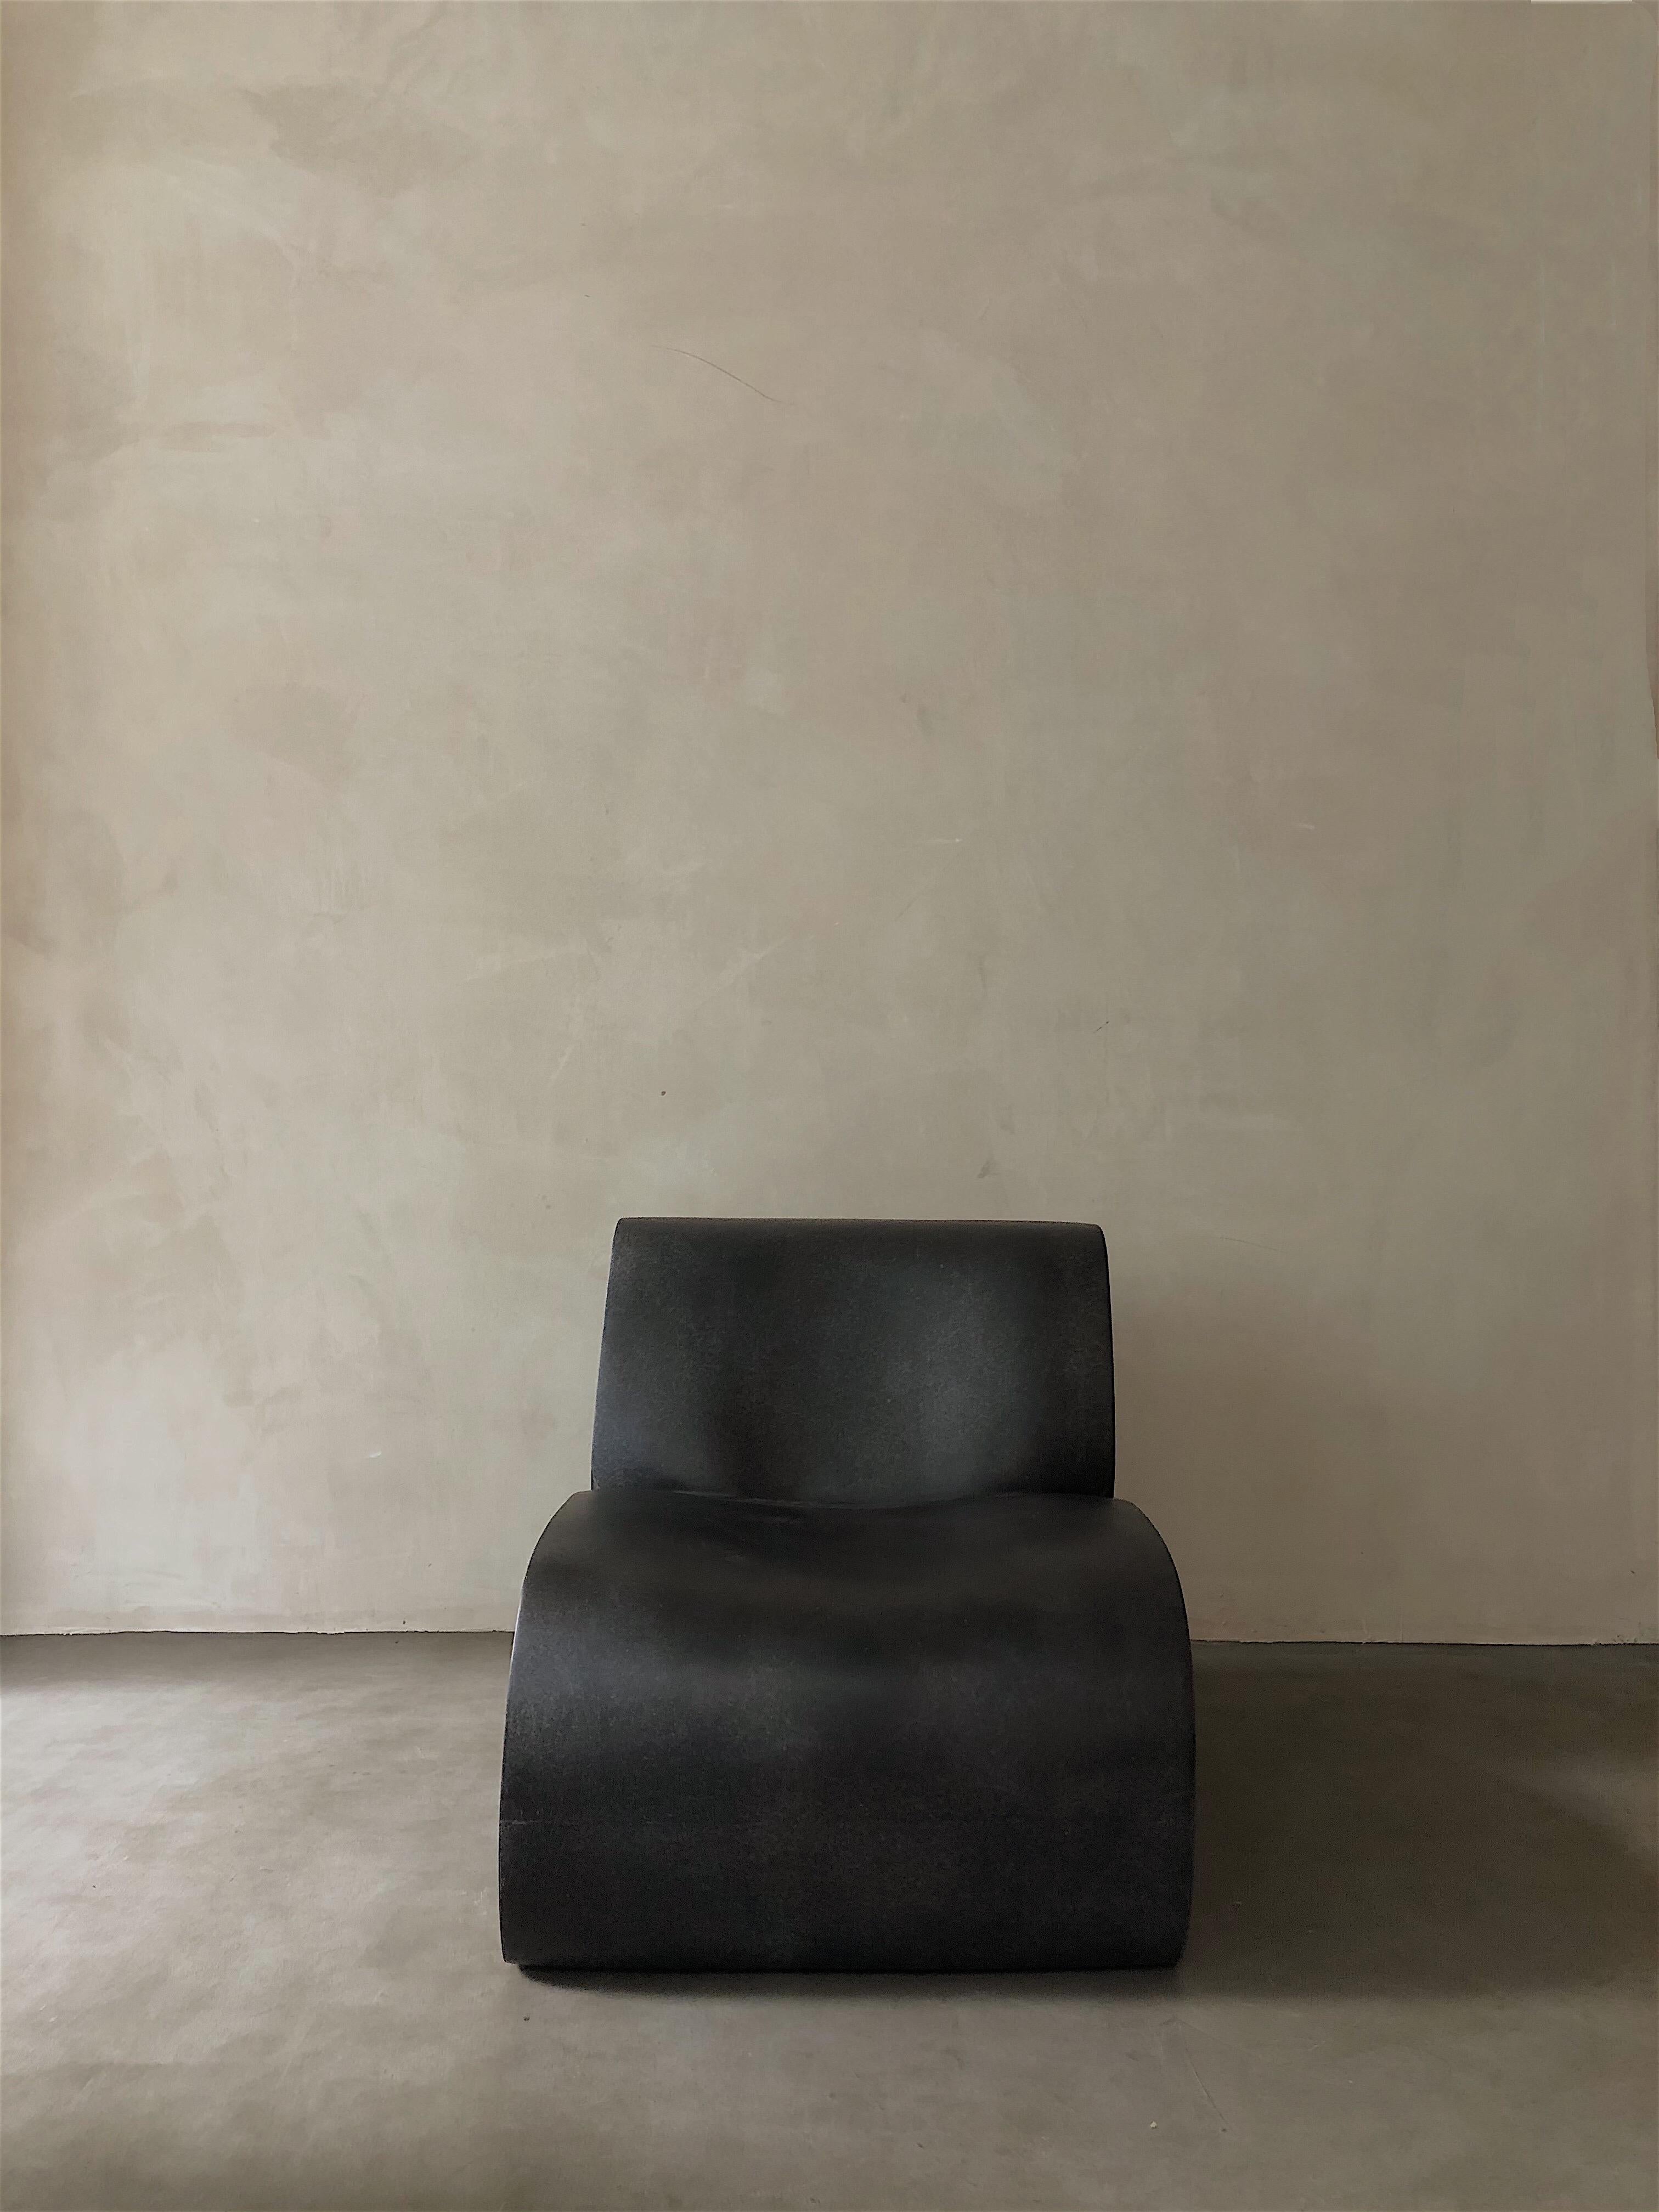 Chaise longue Coffee curl up de kar
Matériaux : PRF.
Dimensions : 63 x 84 x 66 cm : 63 x 84 x 66 cm.

Il se forme en position Up&Up, décontracté en attendant d'être retenu. Le côté conçu comme une coupe transversale du meuble pour présenter la